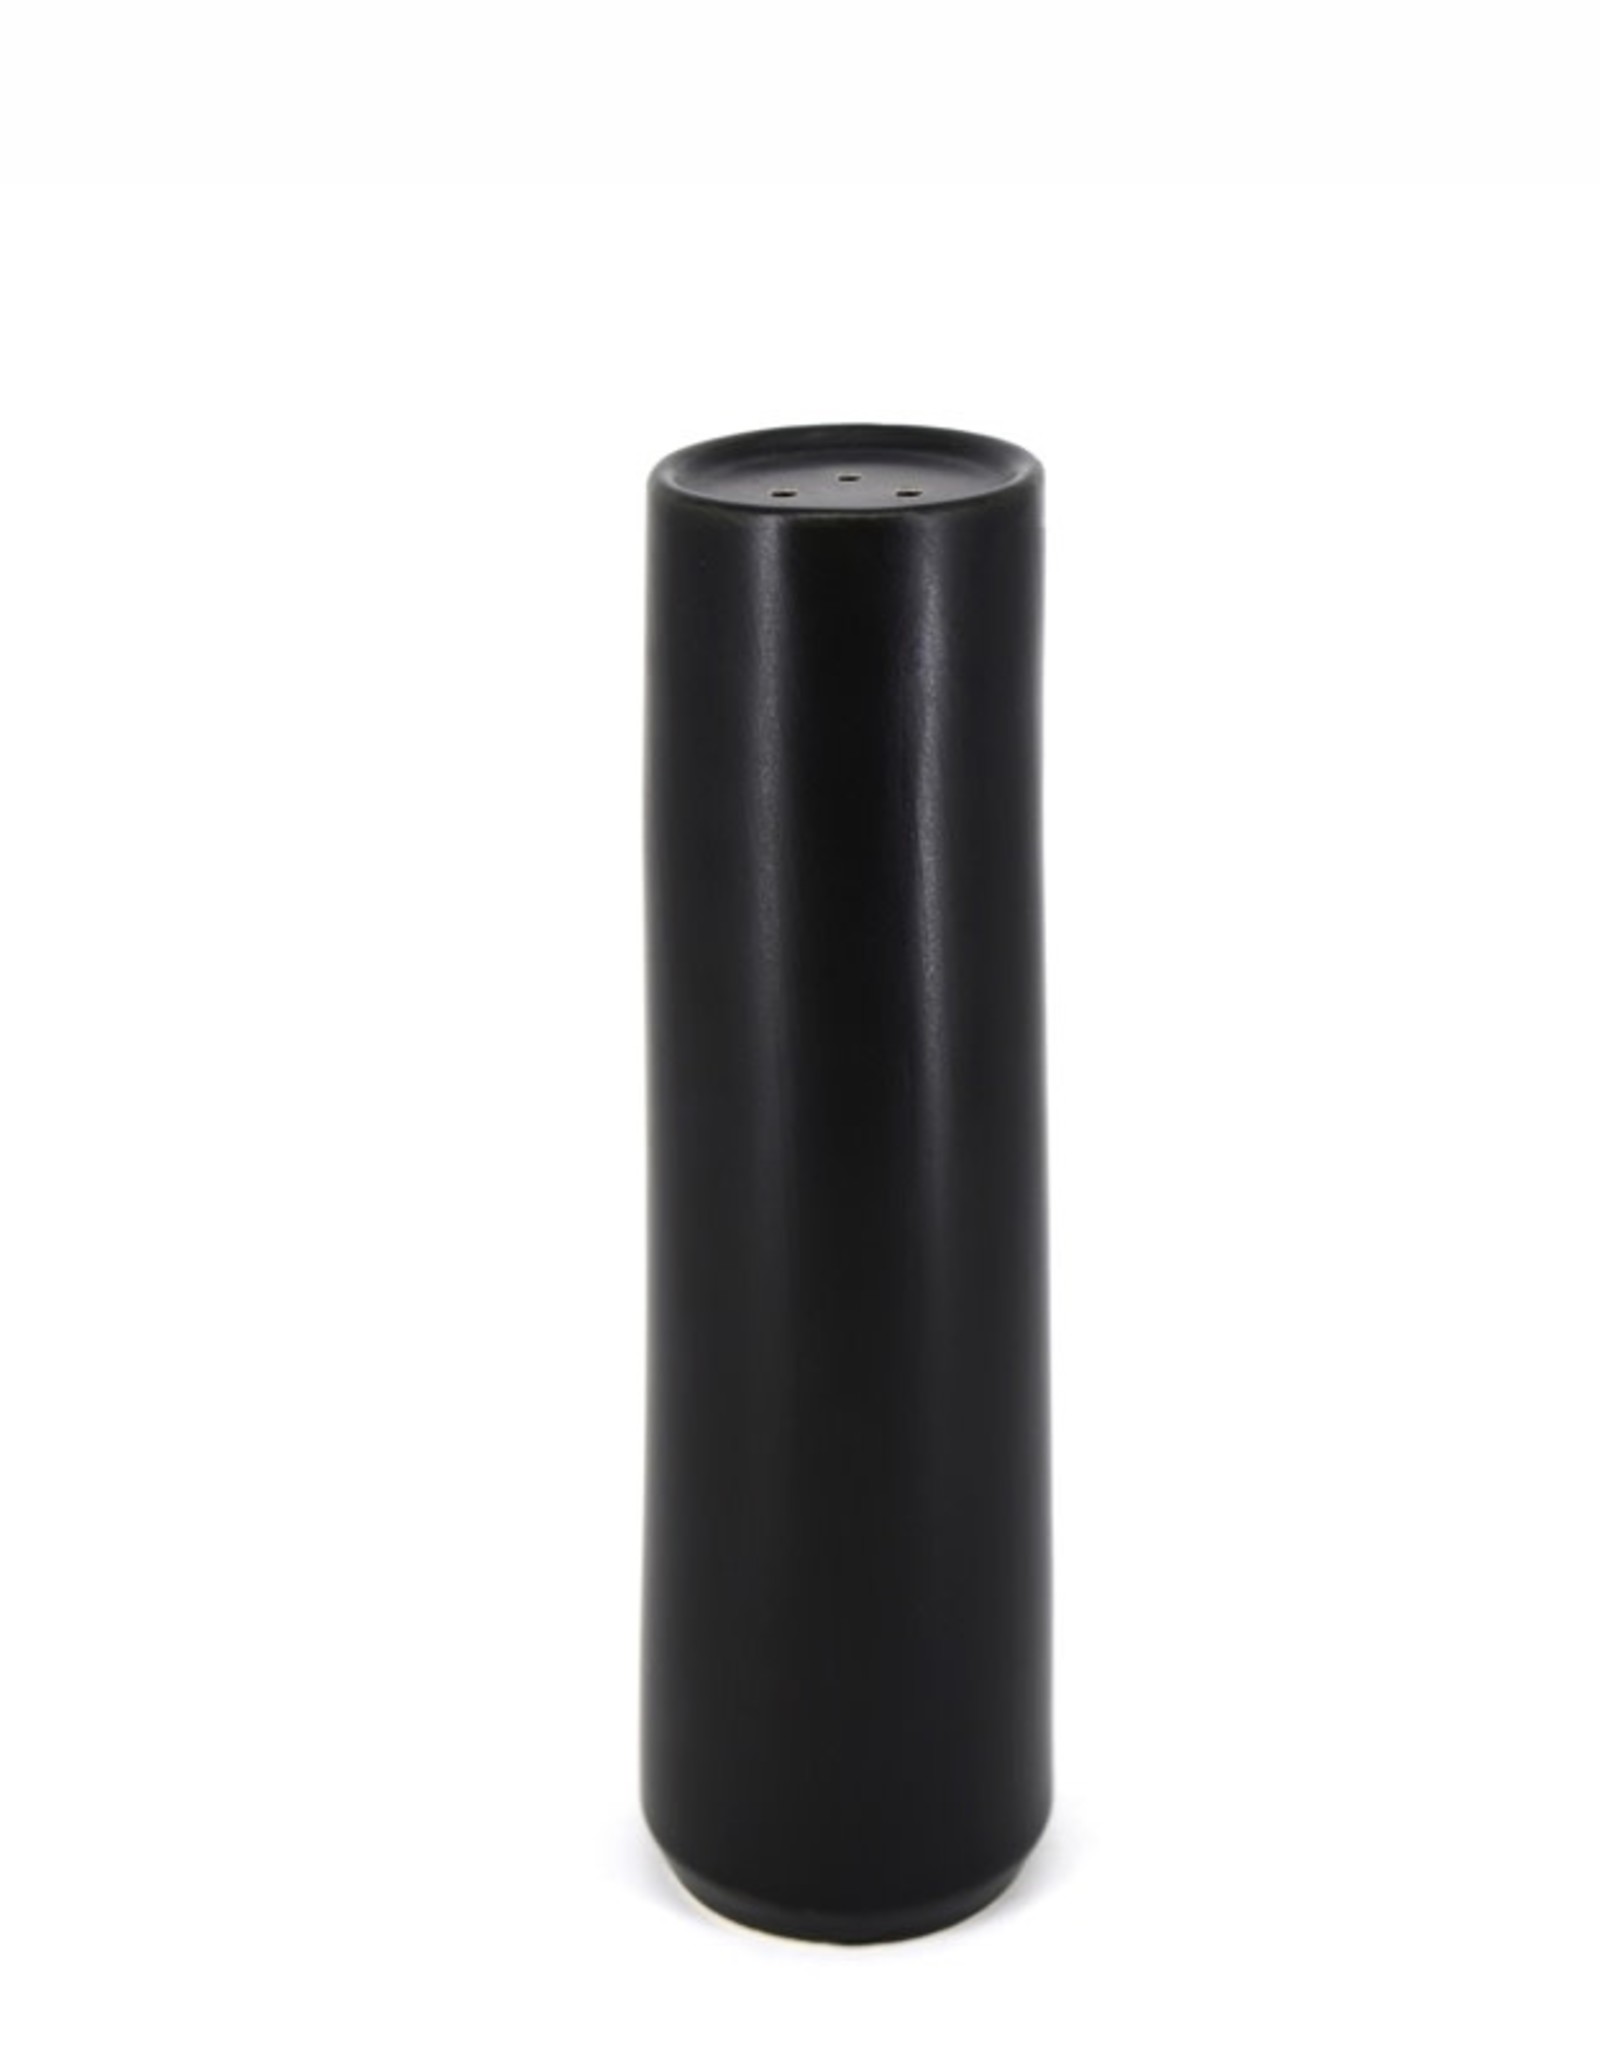 DCO - Salt or Pepper Shaker / Tall, Black